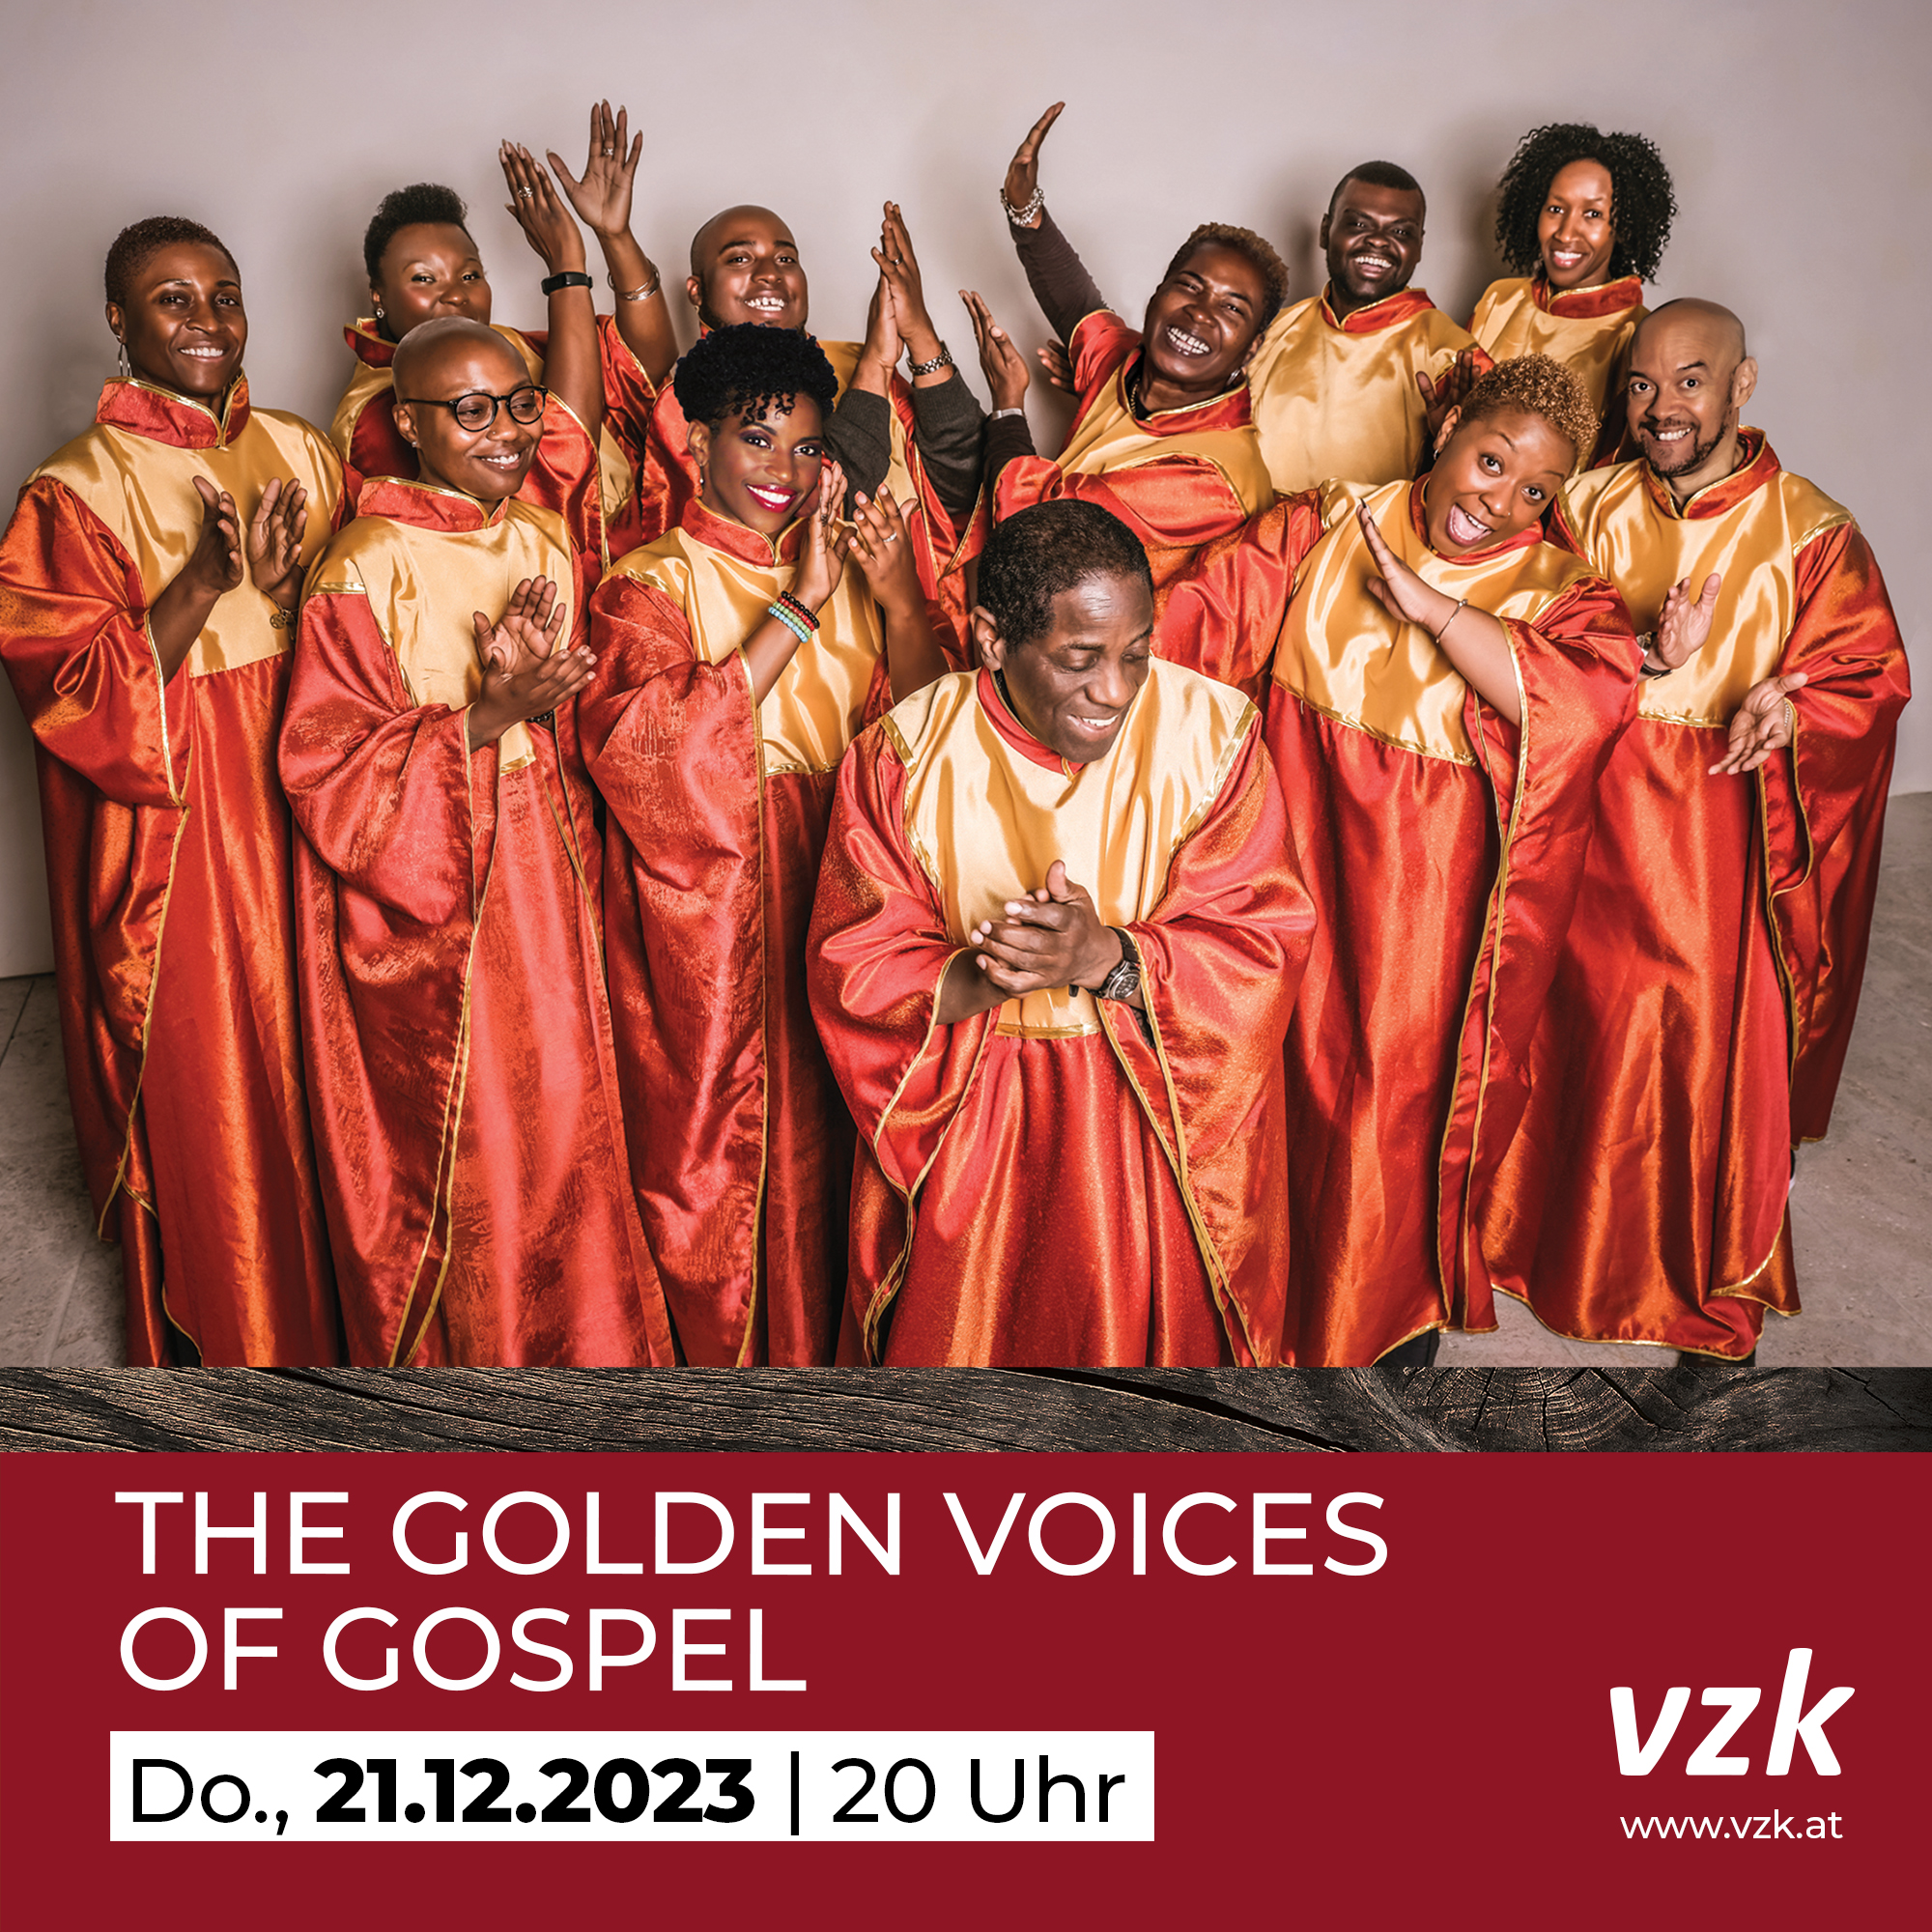 The Golden Voices of Gospel in Kössen